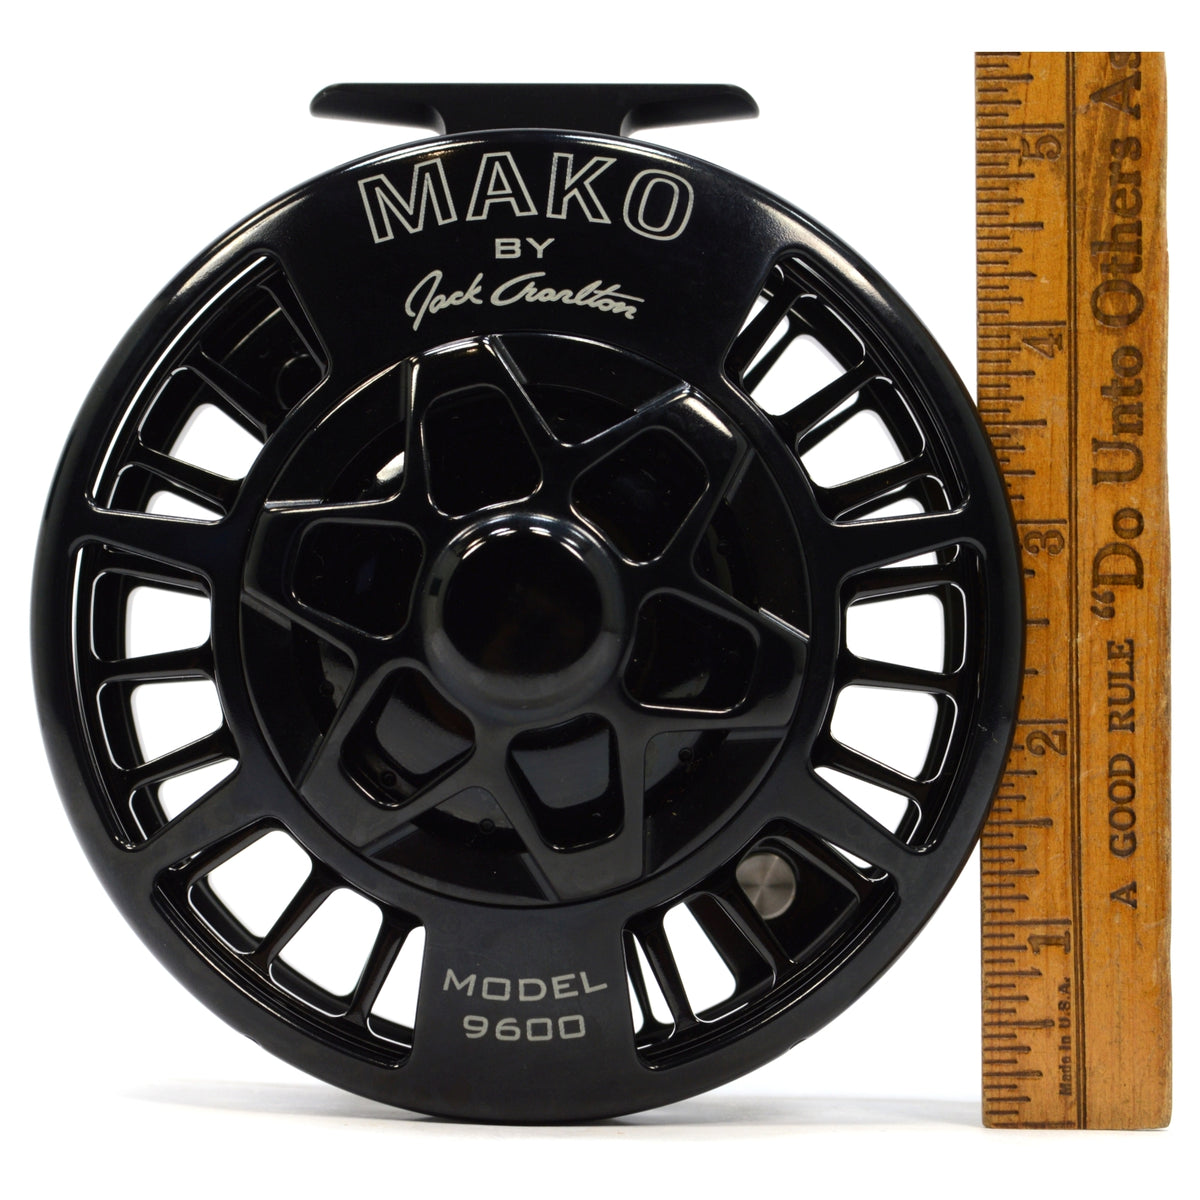 MAKO model 9600 by Jack Charlton - フィッシング